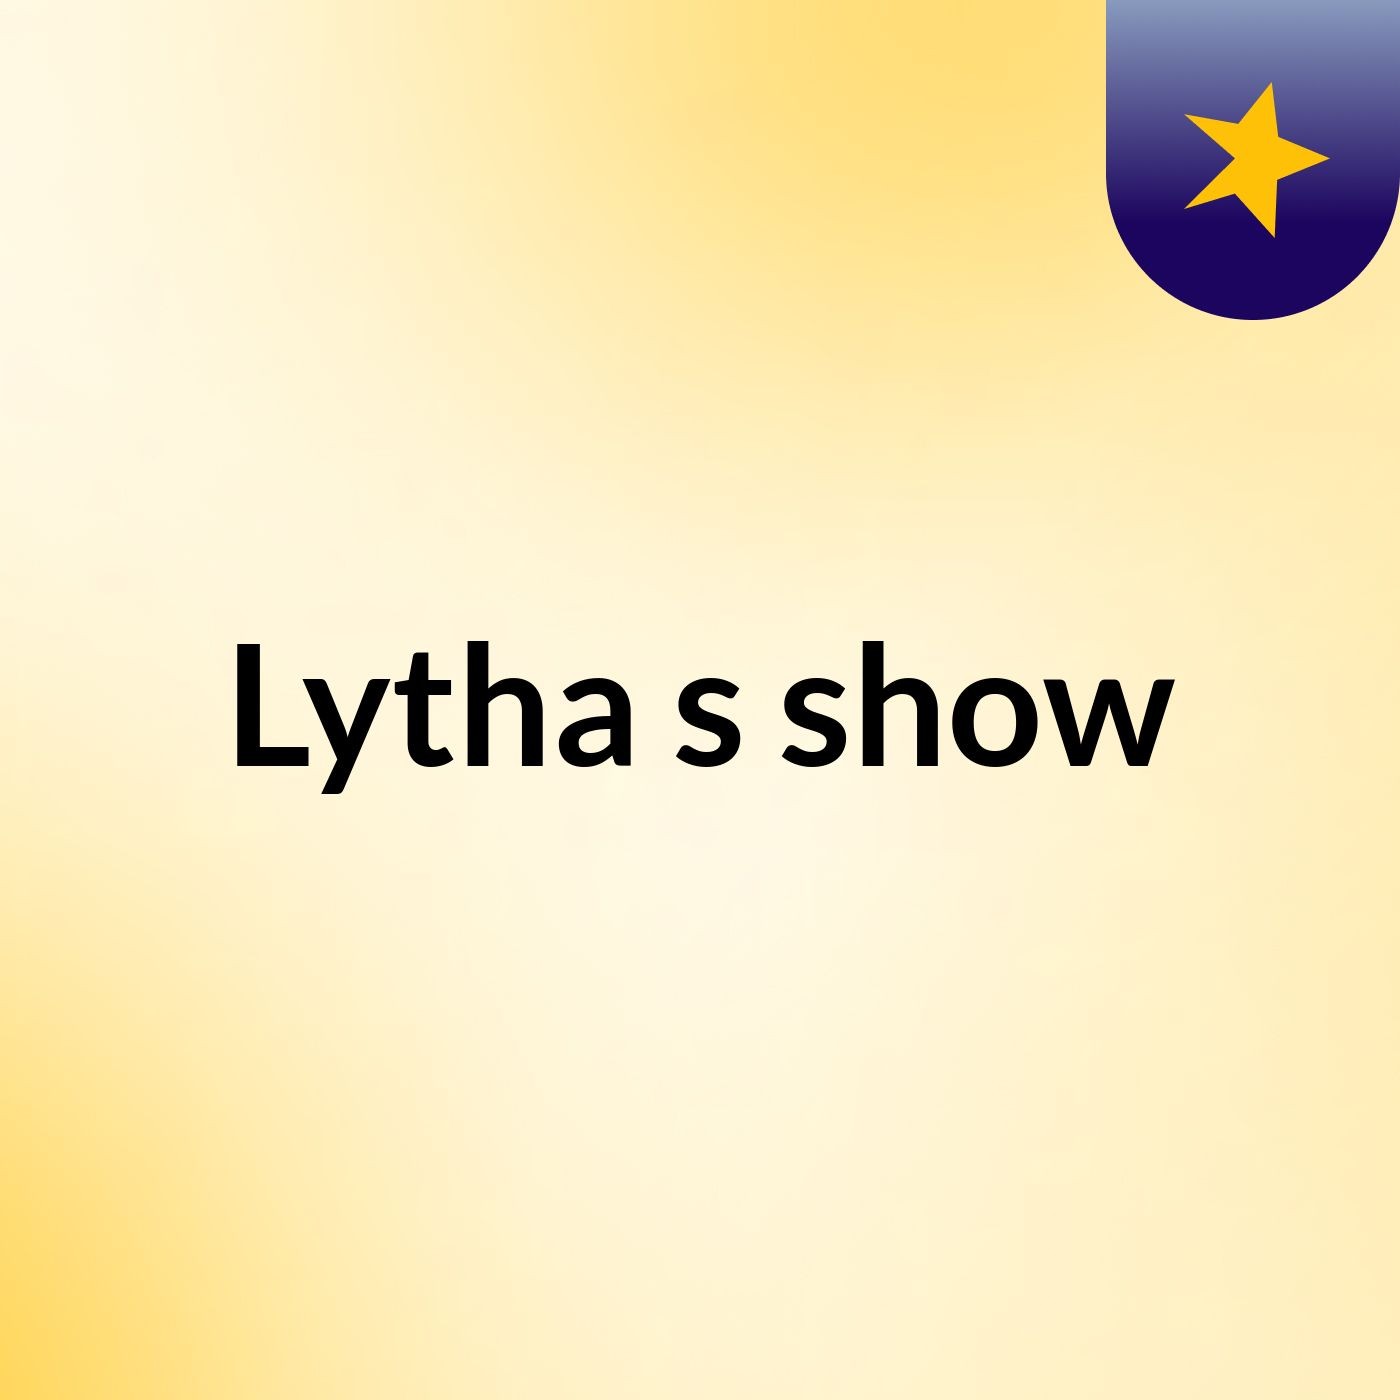 Lytha's show